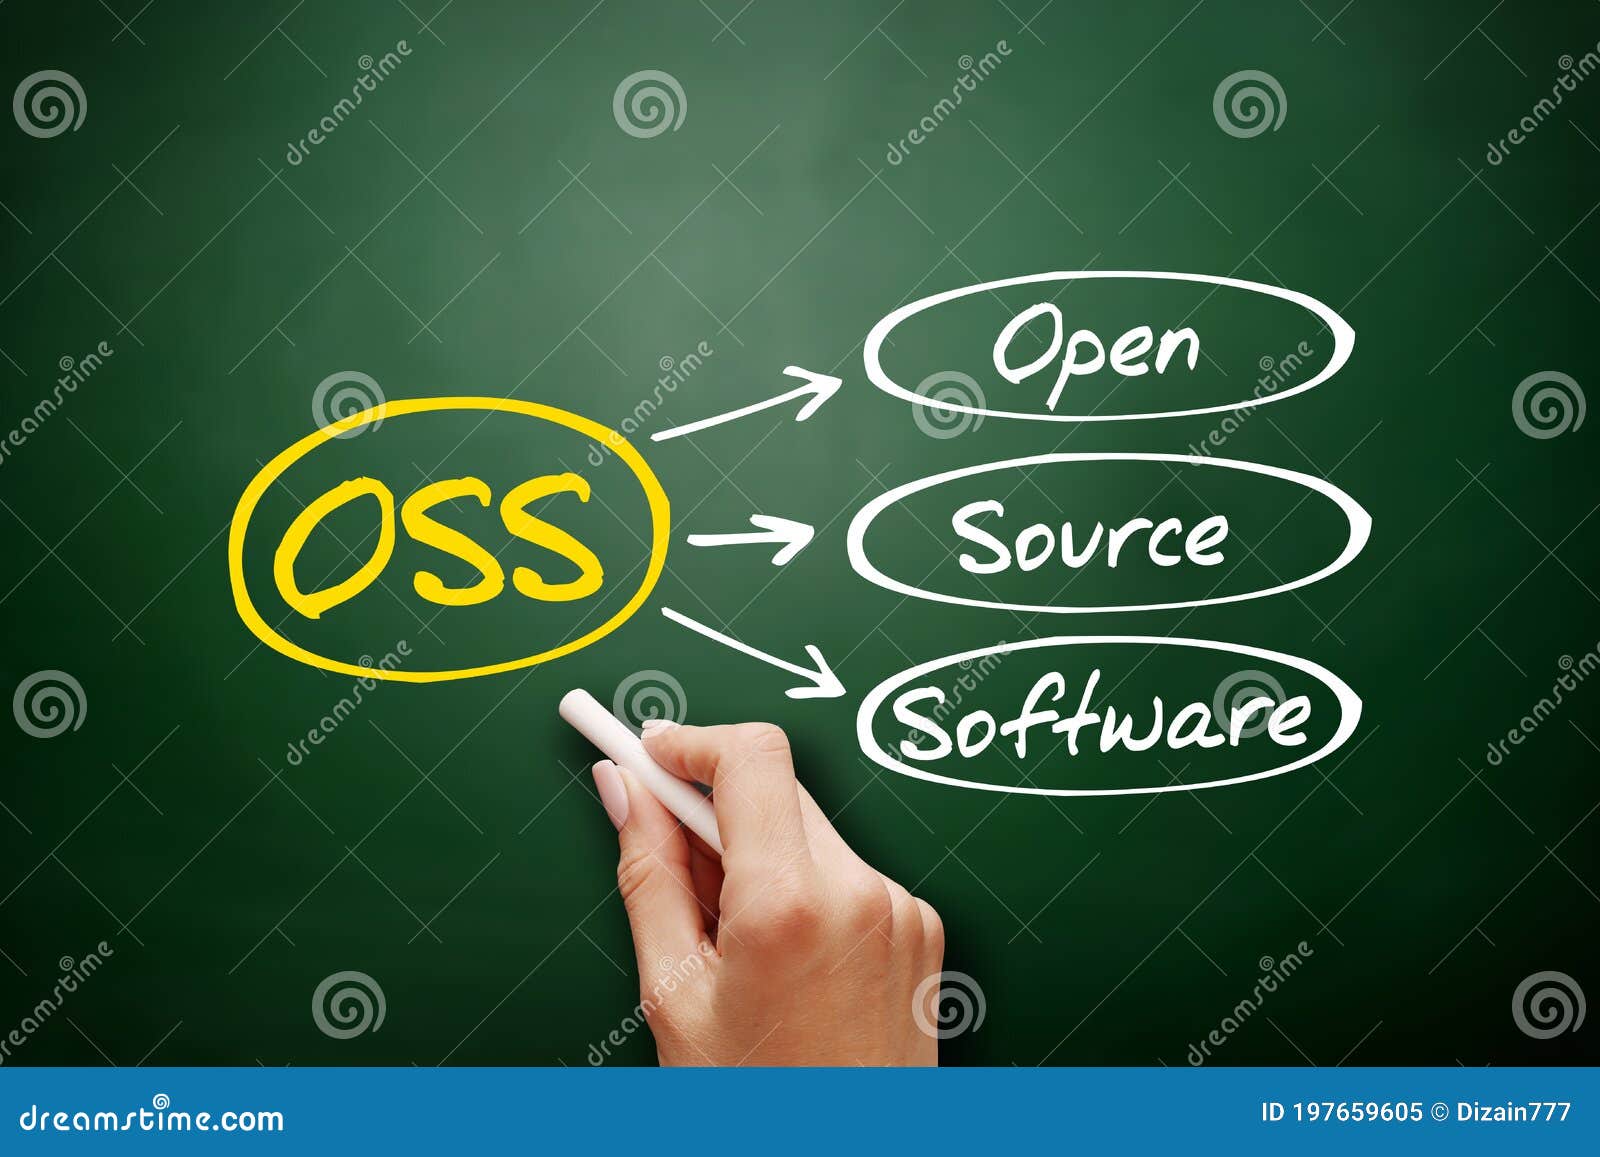 oss - open source software acronym on blackboard